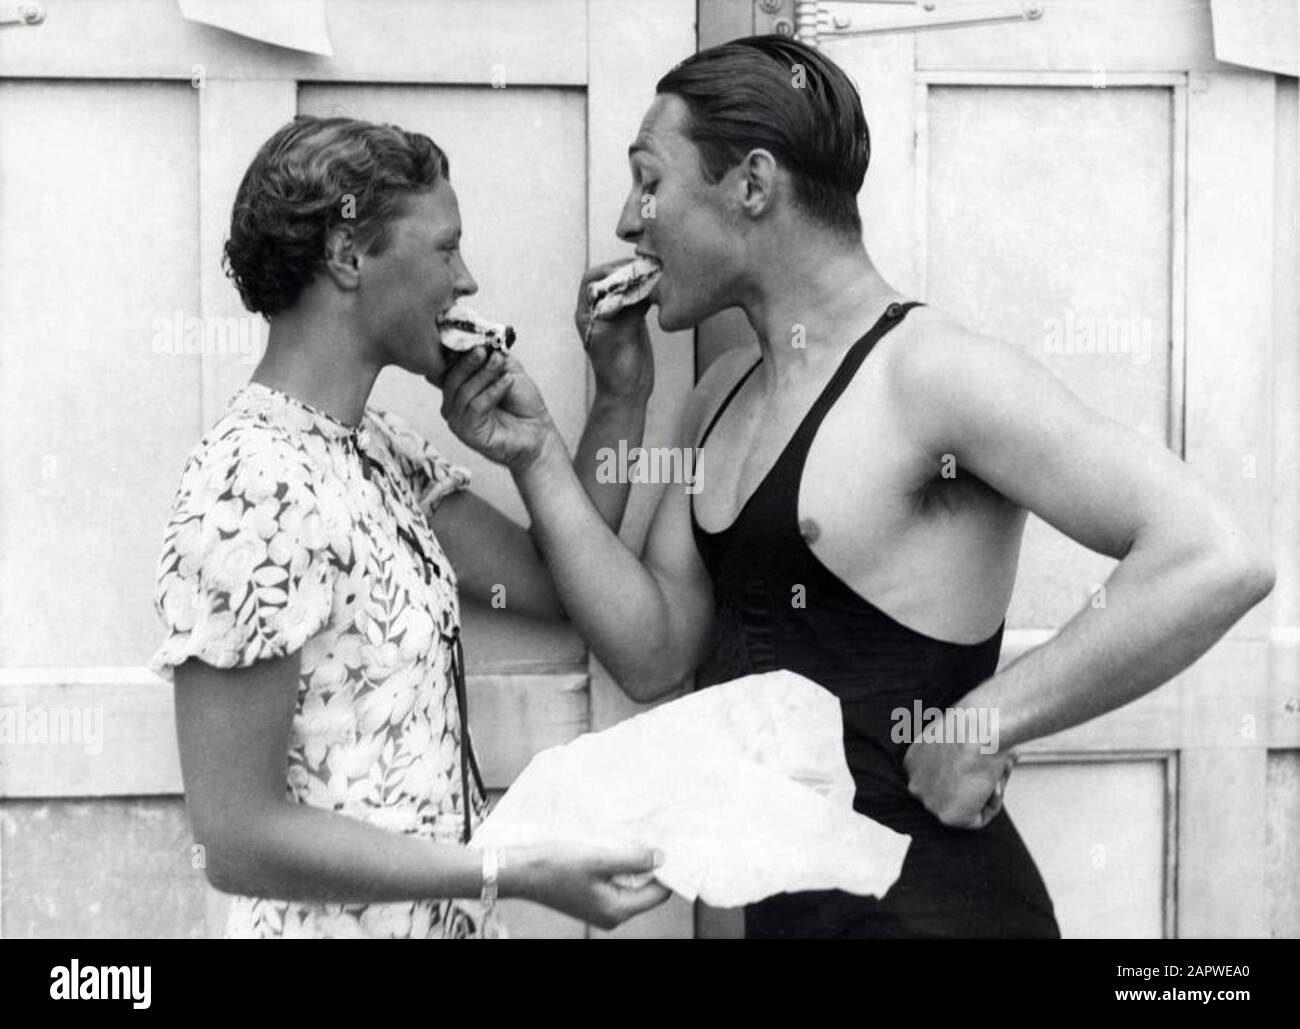 004000766 uomo in costume da bagno e giovane donna (nuotatore Willy den  Ouden) si danno un morso di bun. Inizio '30s, luogo sconosciuto. Uomo in  costume da bagno e donna che condividono